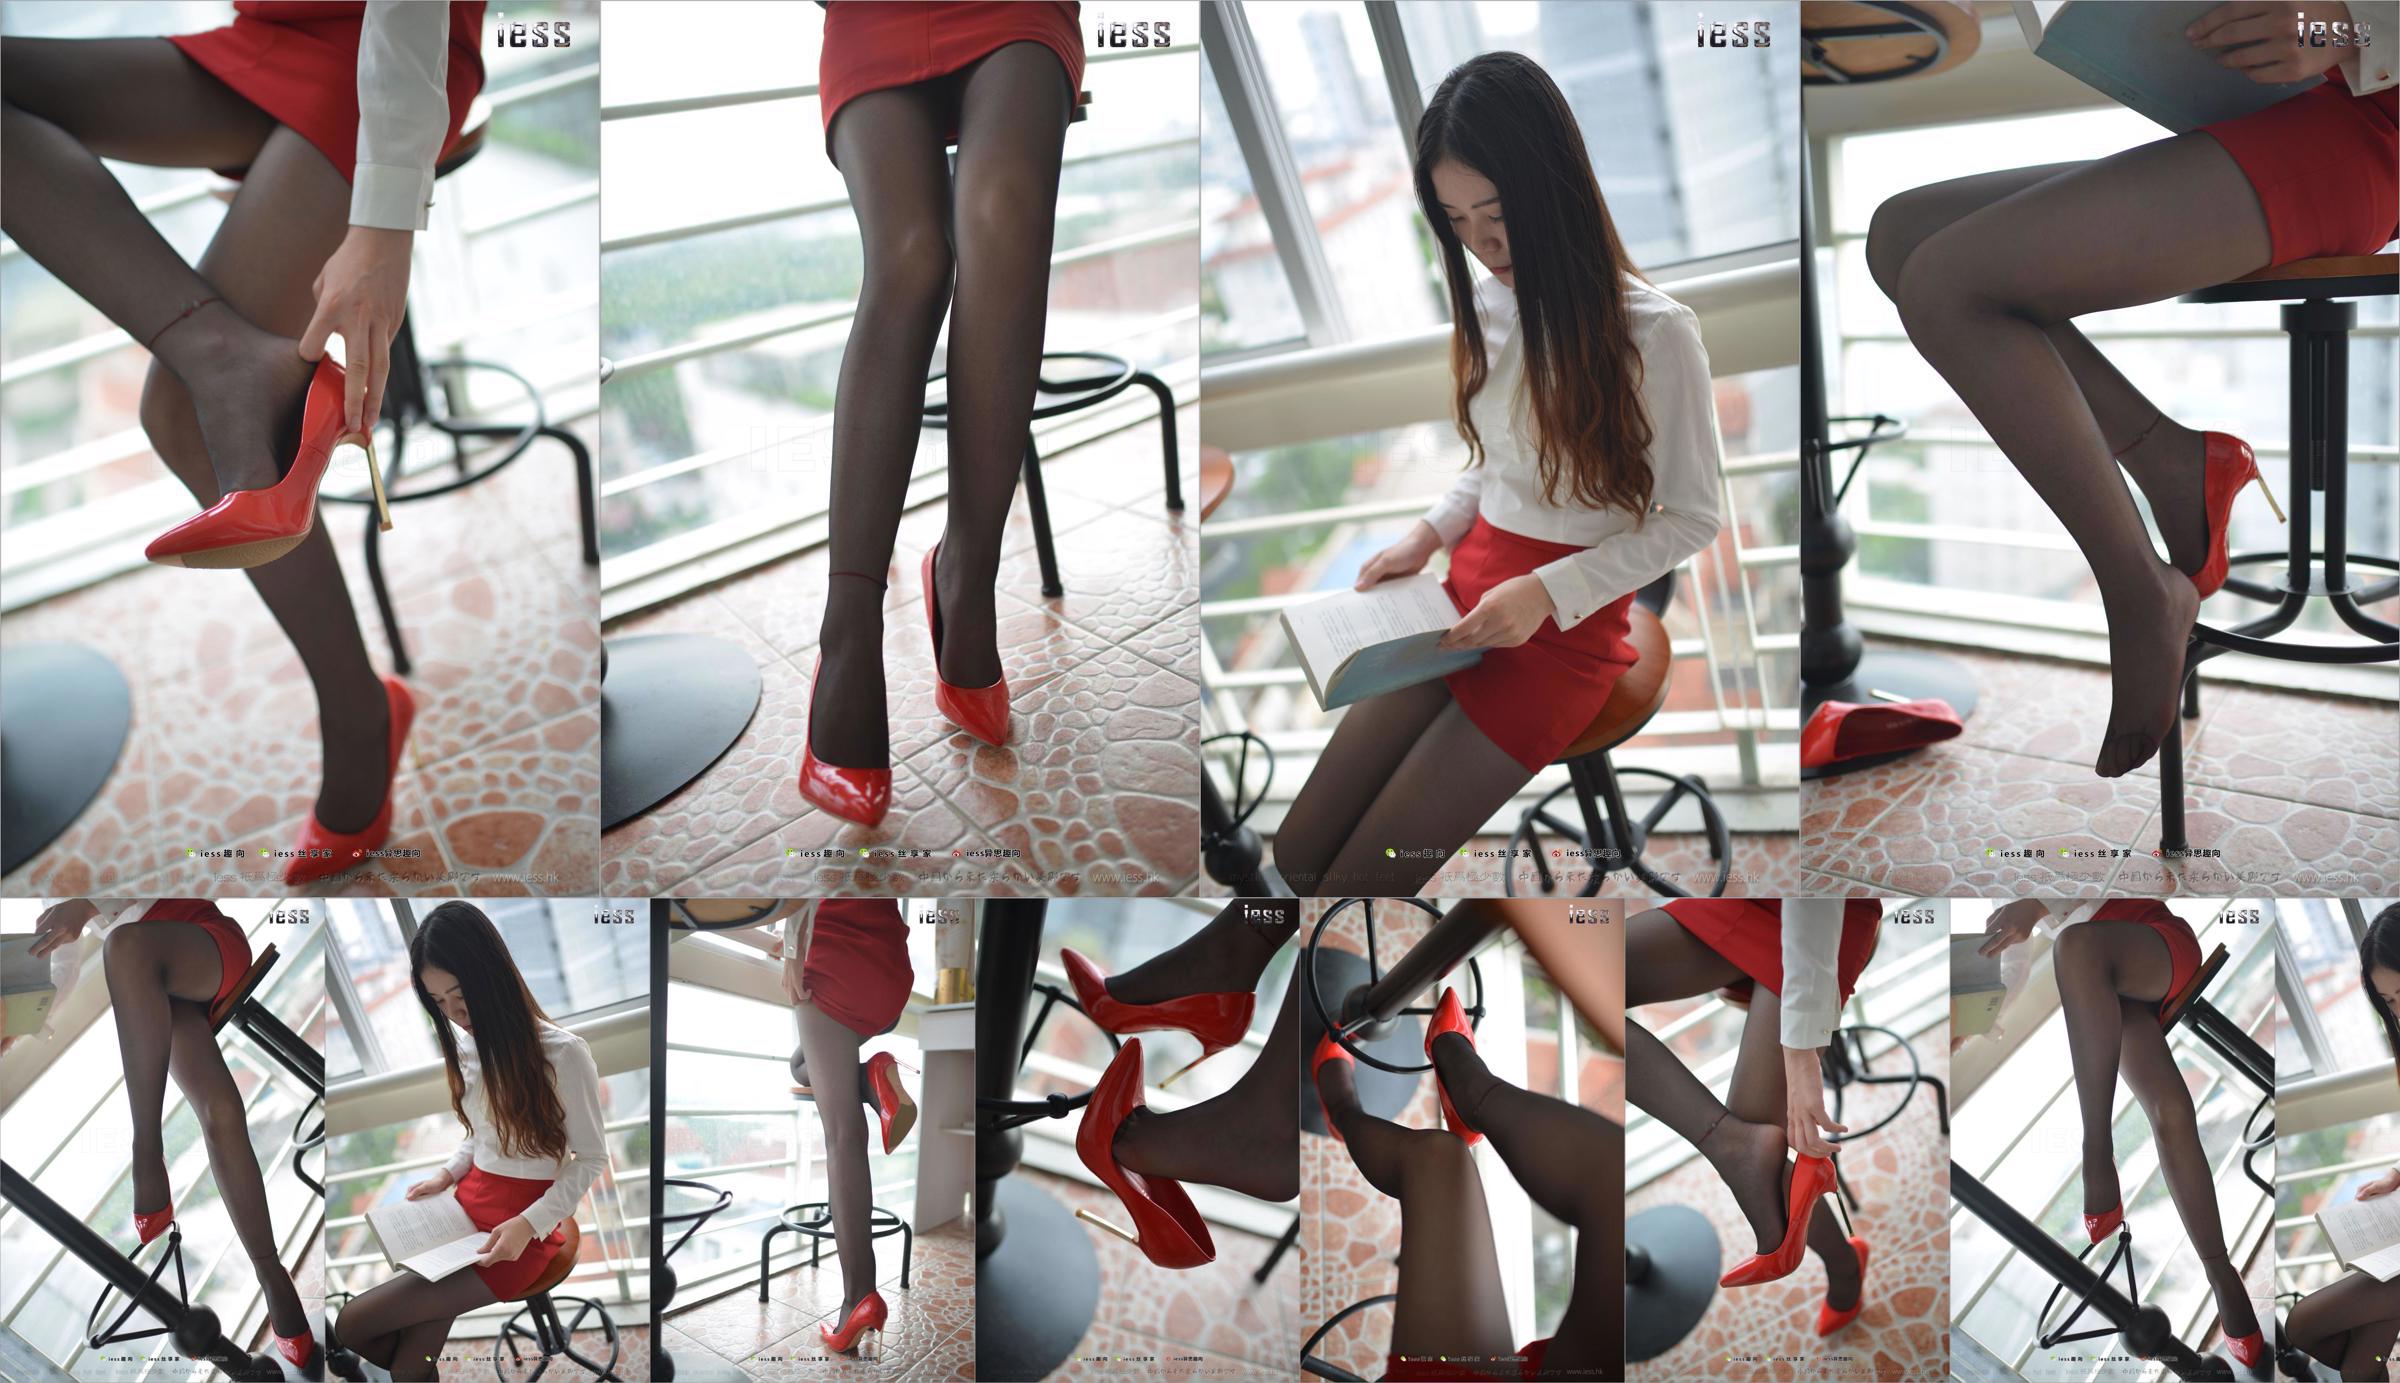 Silk Foot Bento 147 Concubine "Красный высокий, черный шелк и красное платье" [IESS Weird Интересно] No.a07fcd Страница 1